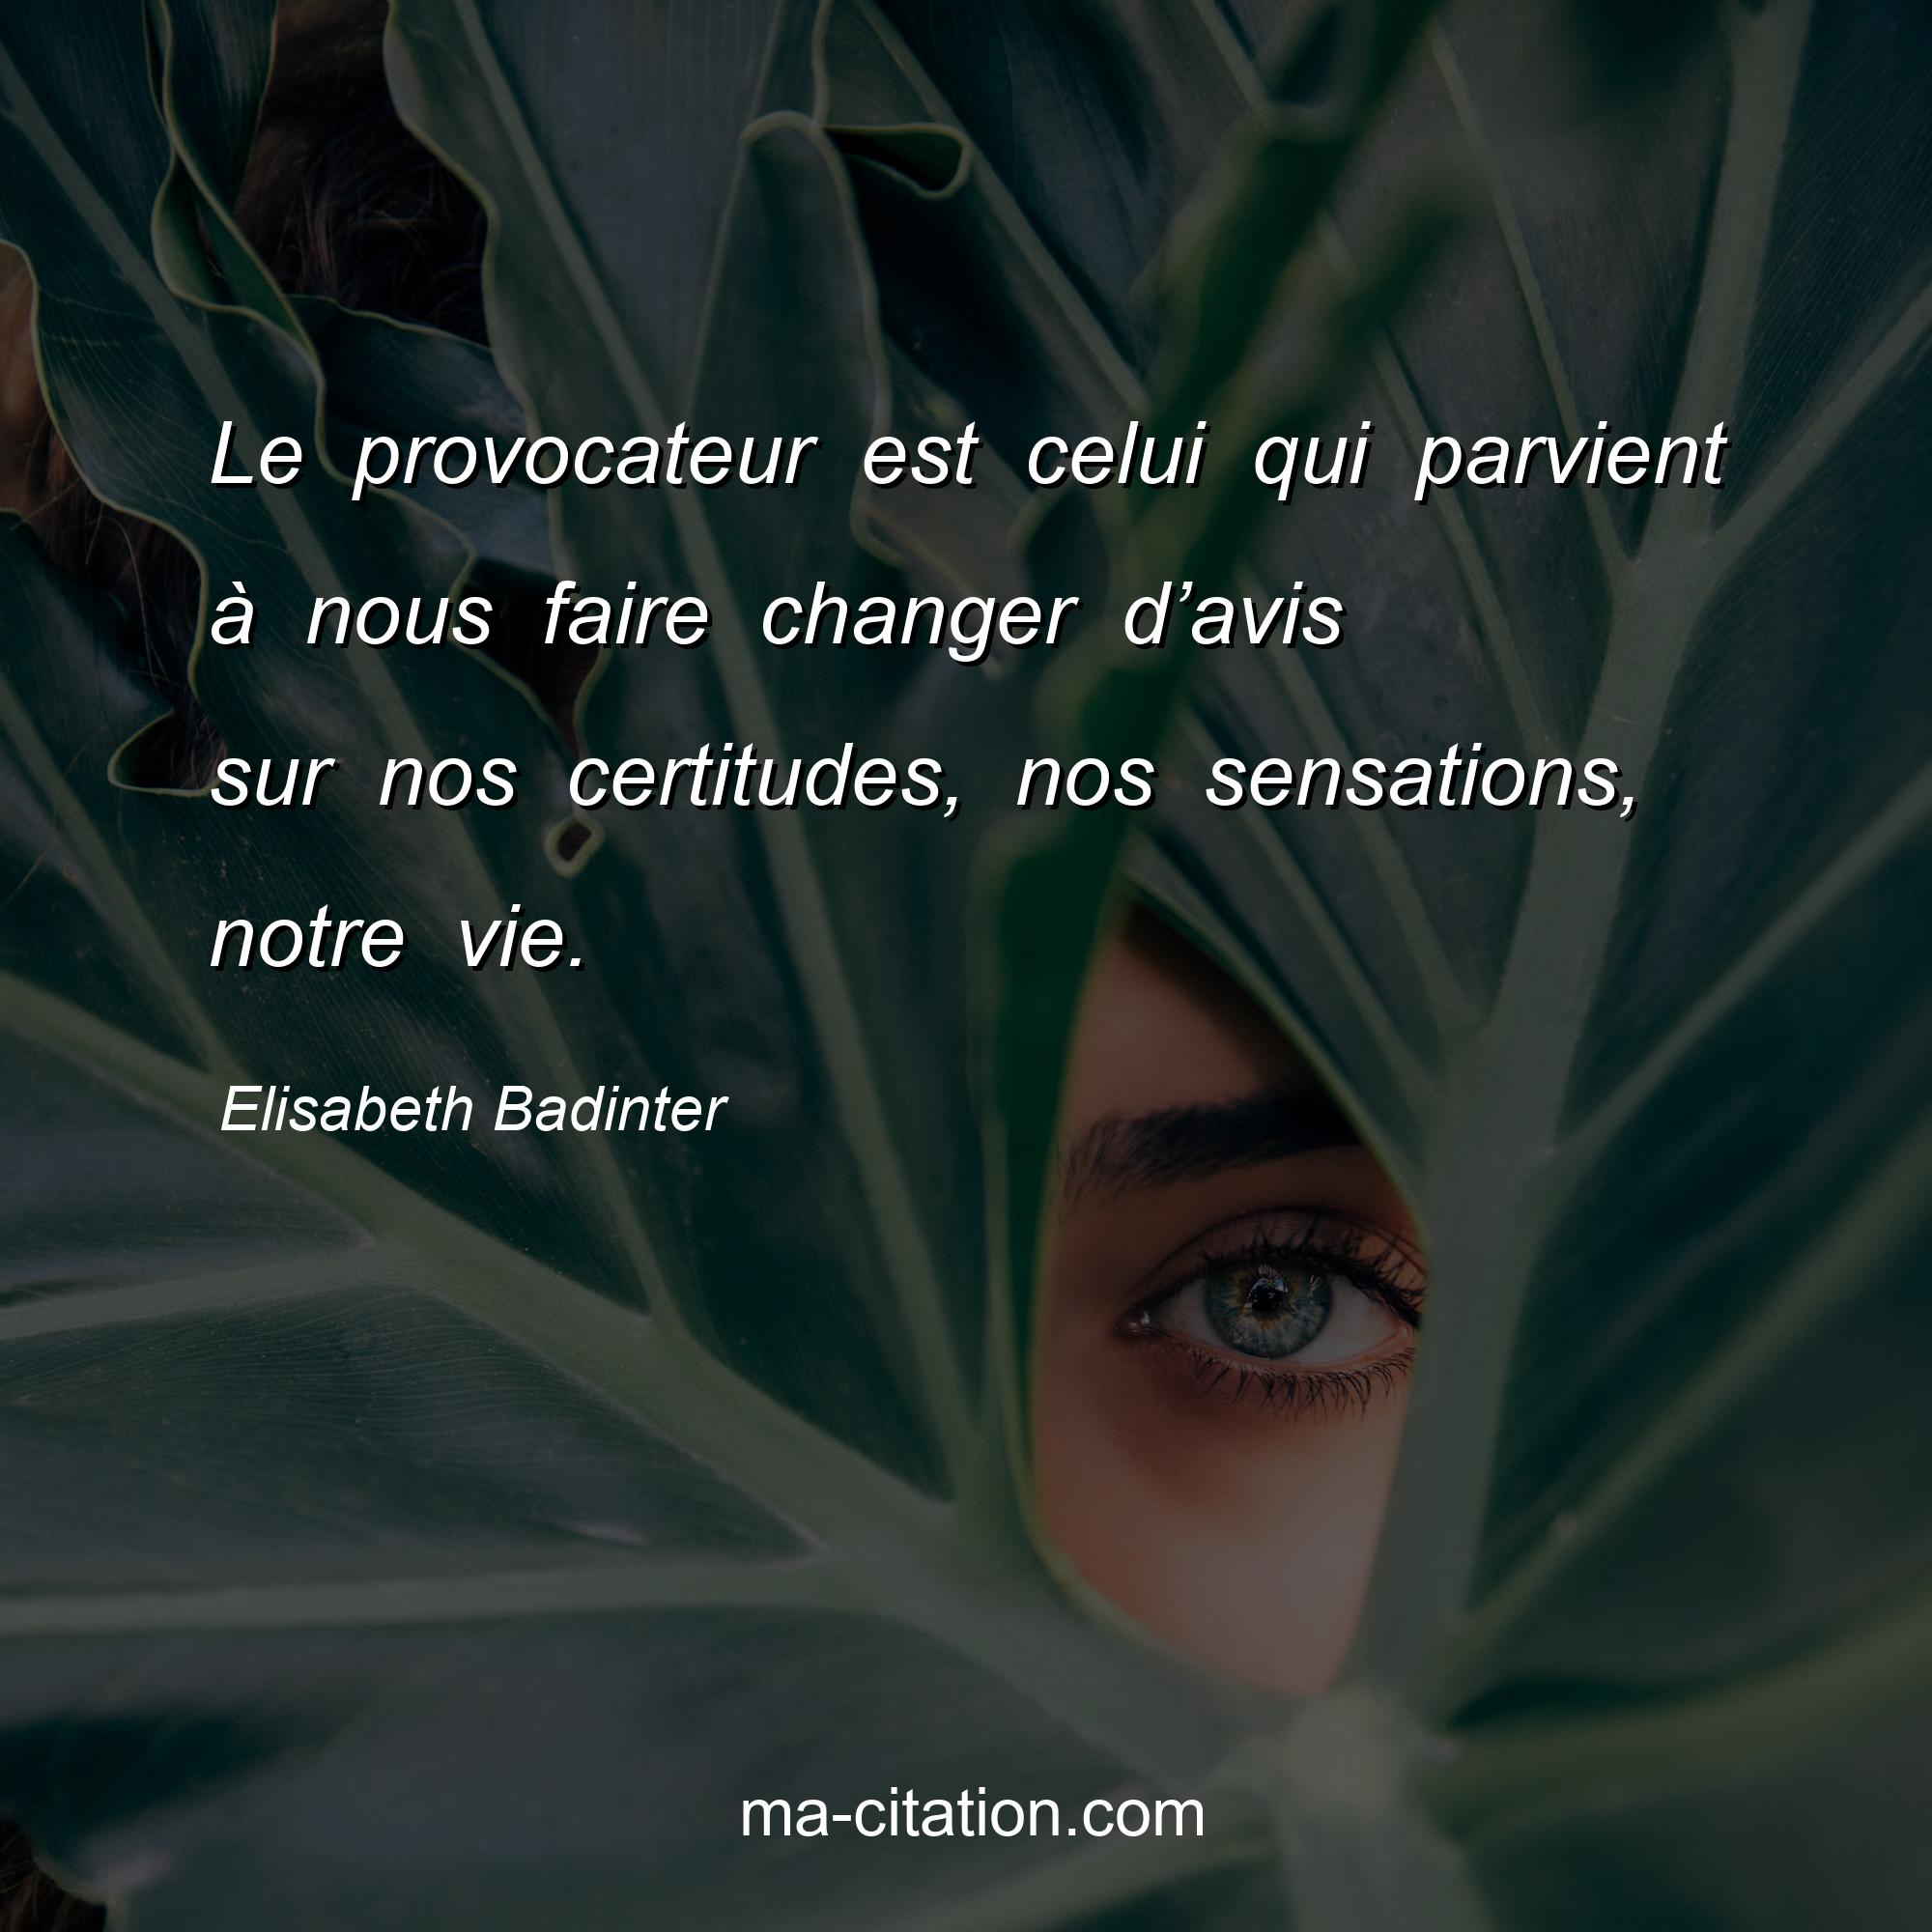 Elisabeth Badinter : Le provocateur est celui qui parvient à nous faire changer d’avis sur nos certitudes, nos sensations, notre vie.